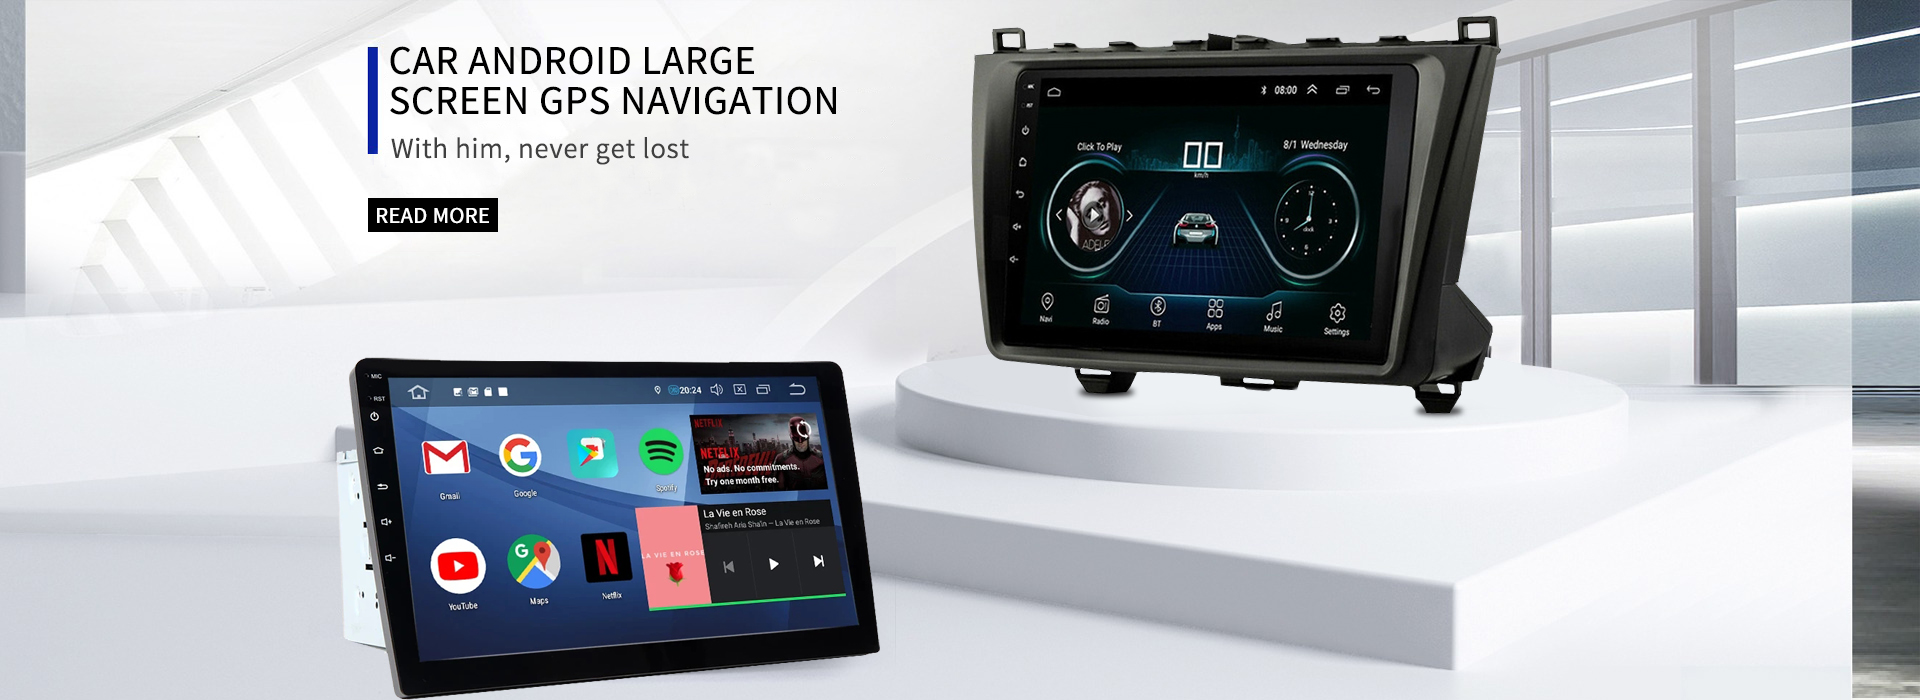 GPS navigacija z velikim zaslonom avtomobila Android